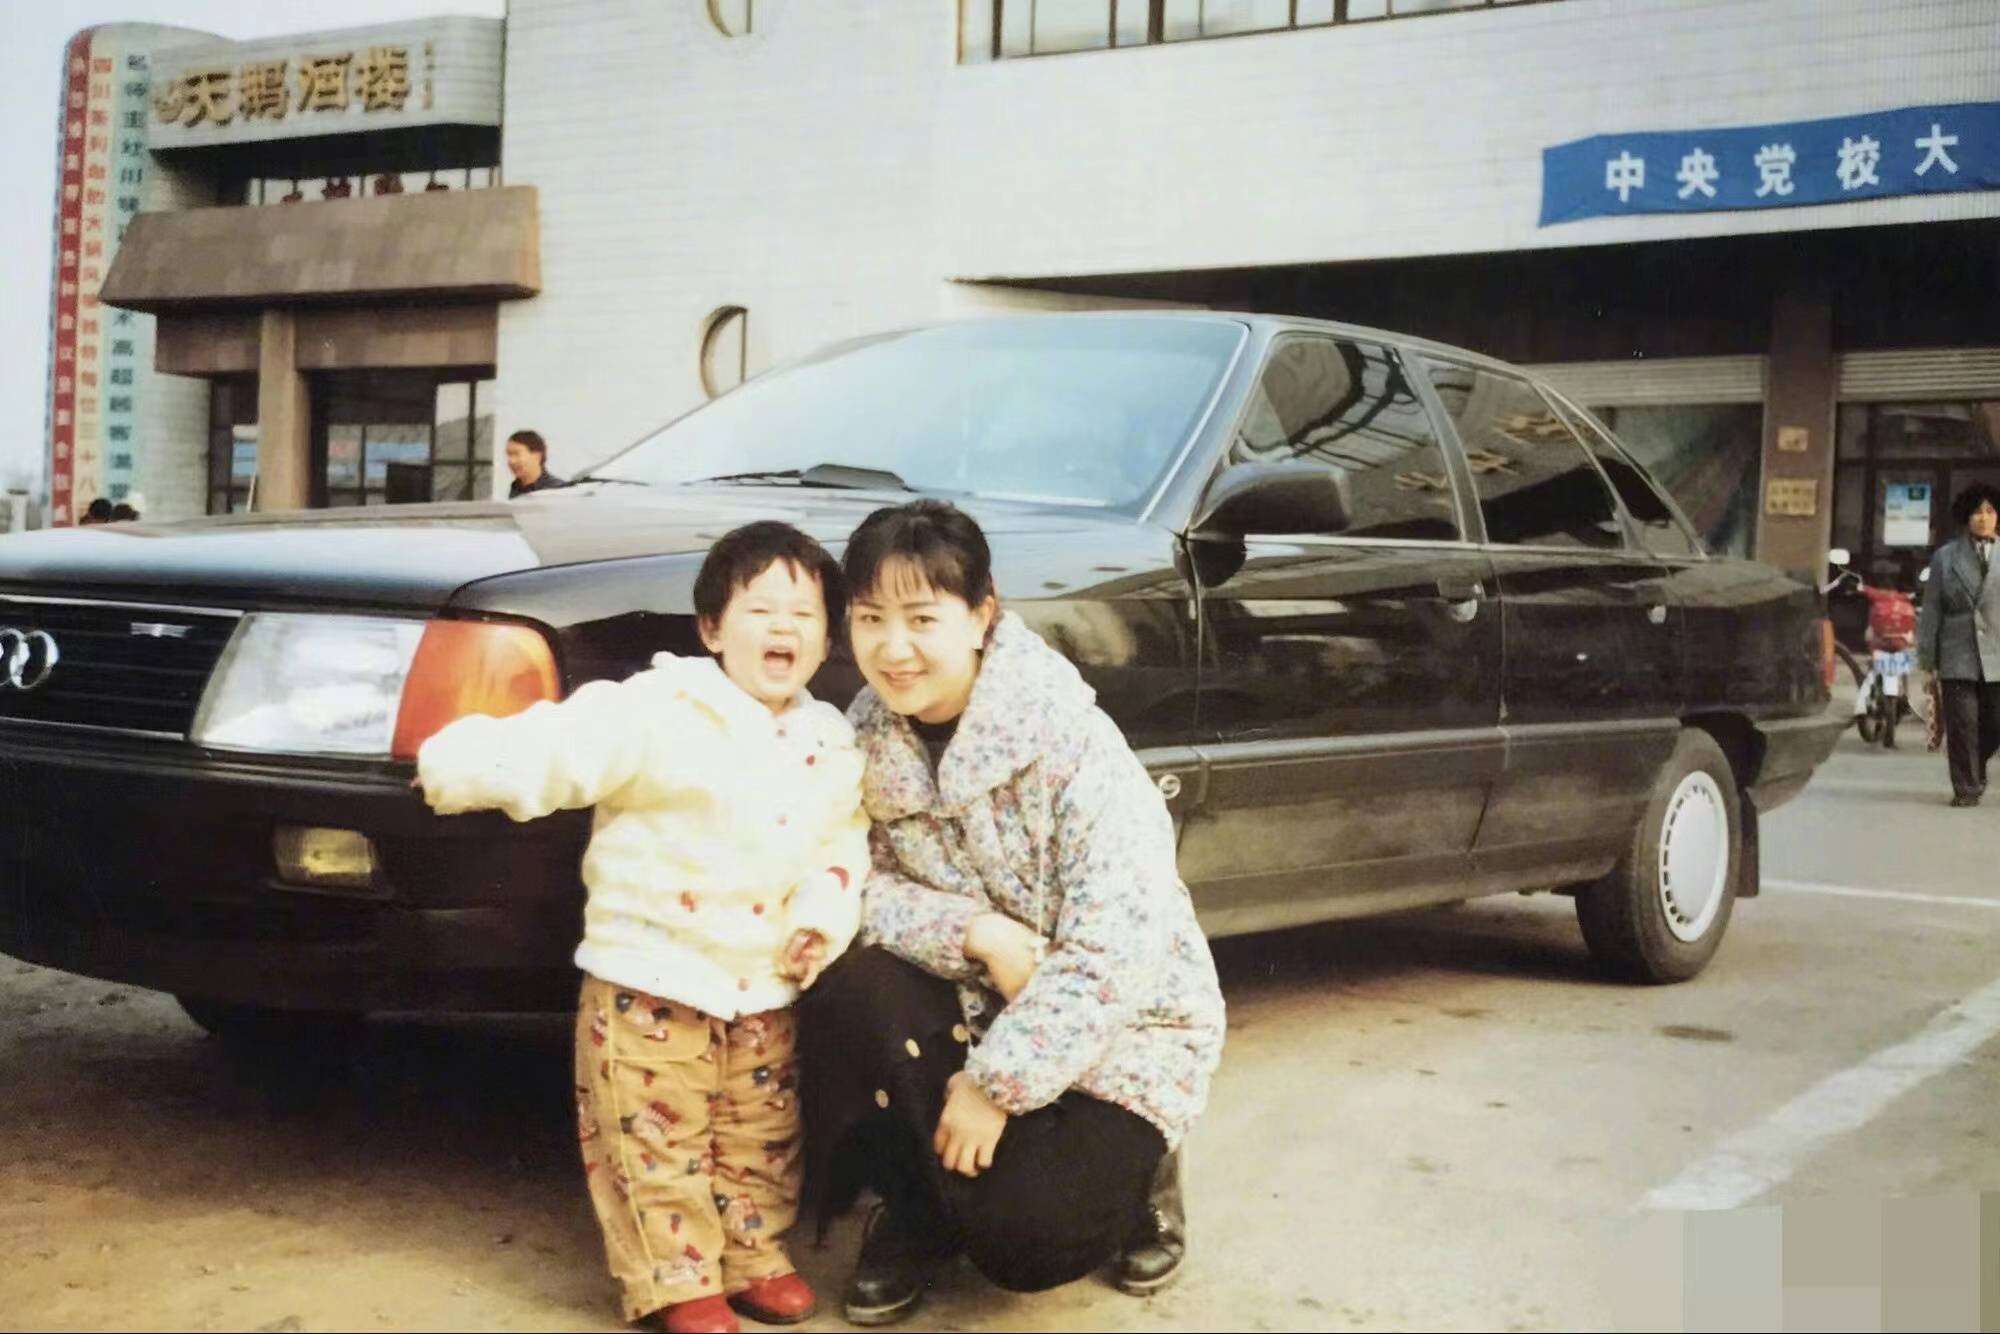 此外,杨紫晒出了多张小时候和妈妈在一起的合照,从照片中她妈妈的打扮